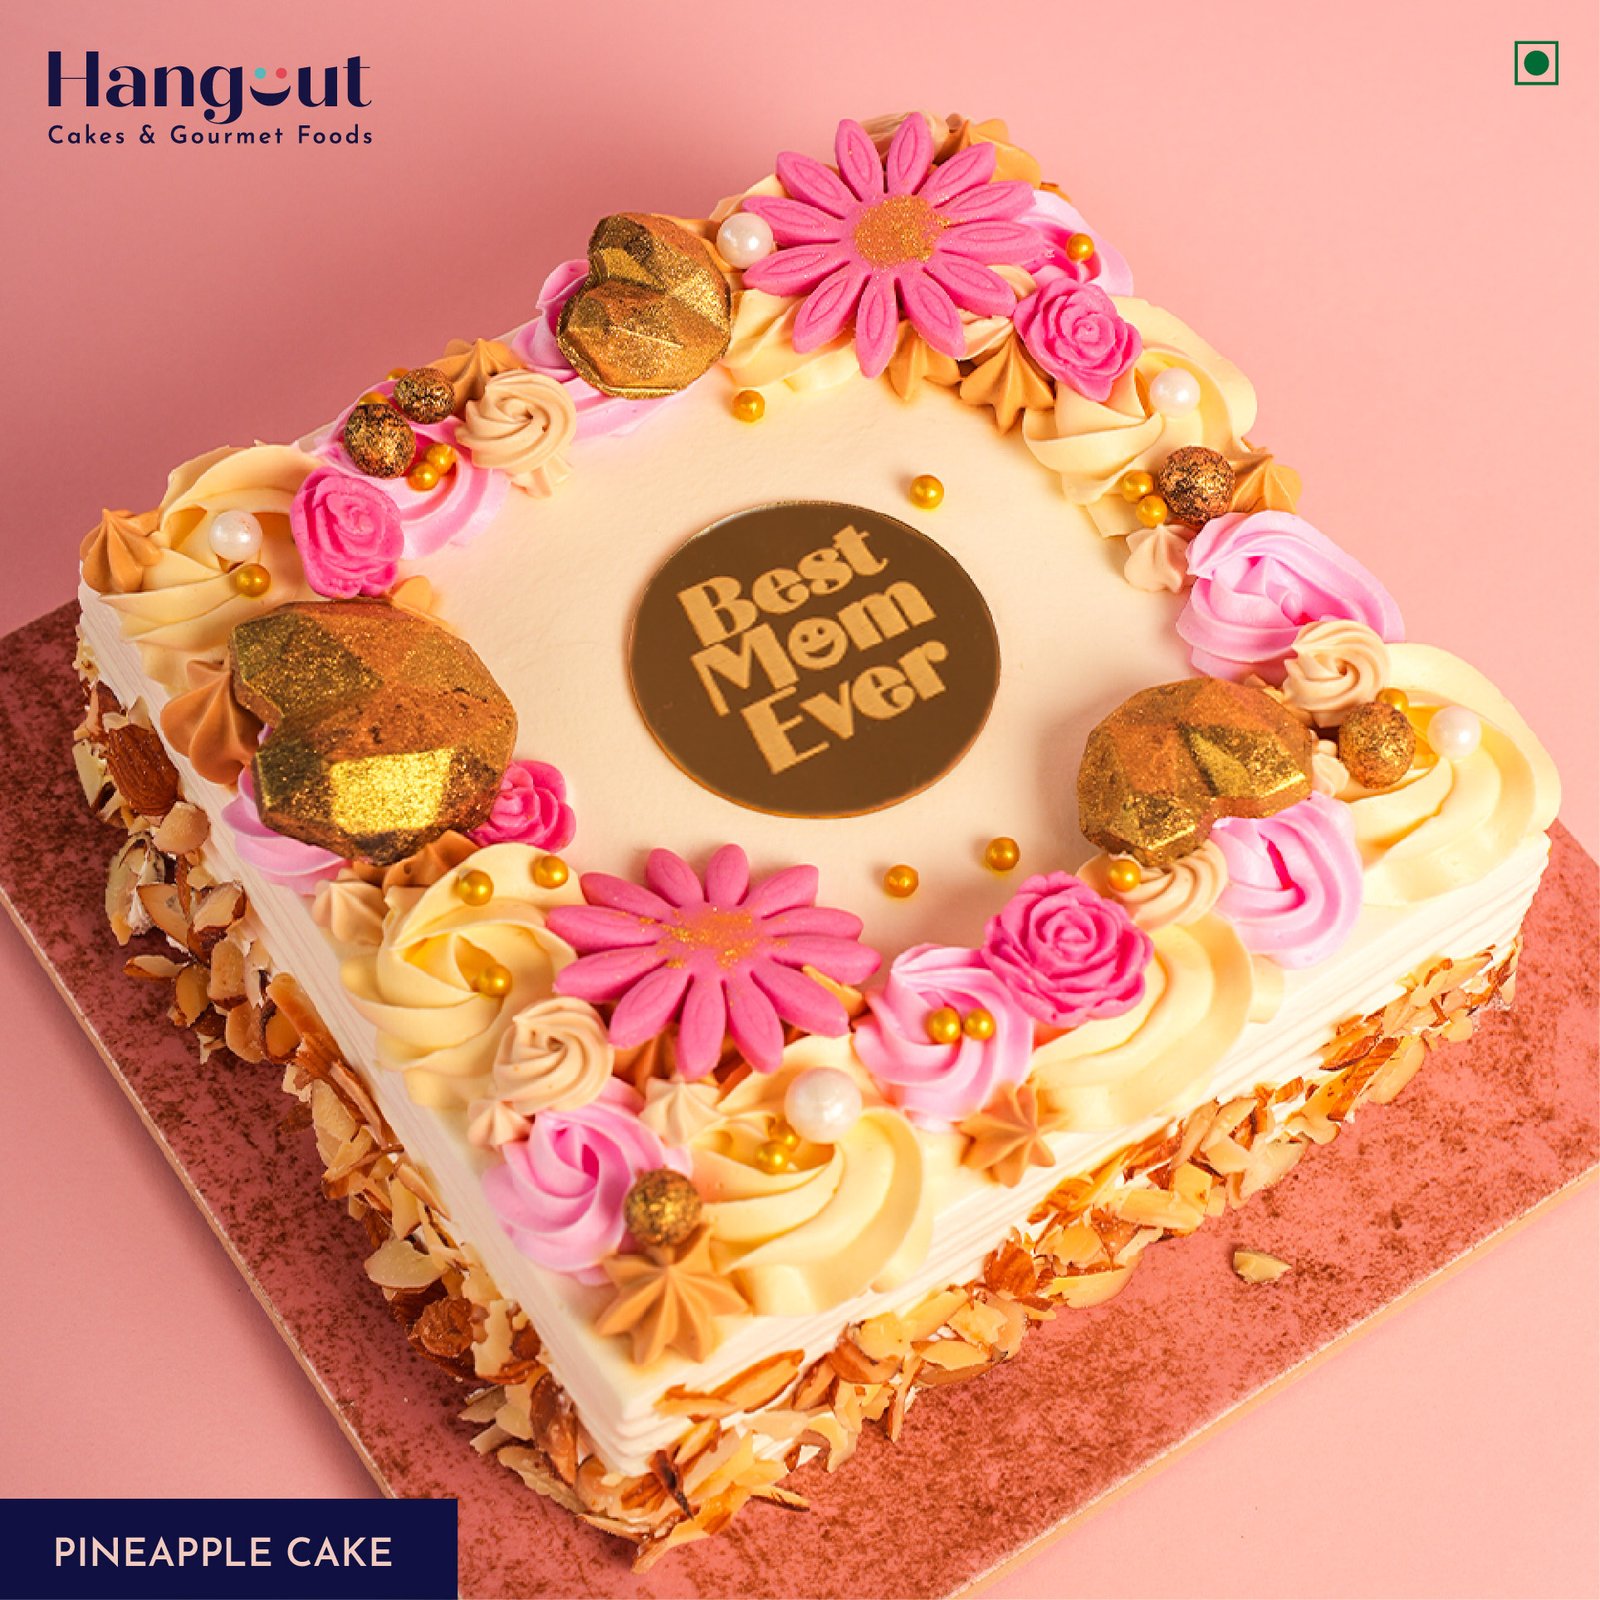 Details more than 76 hangout cakes malad super hot  indaotaonec